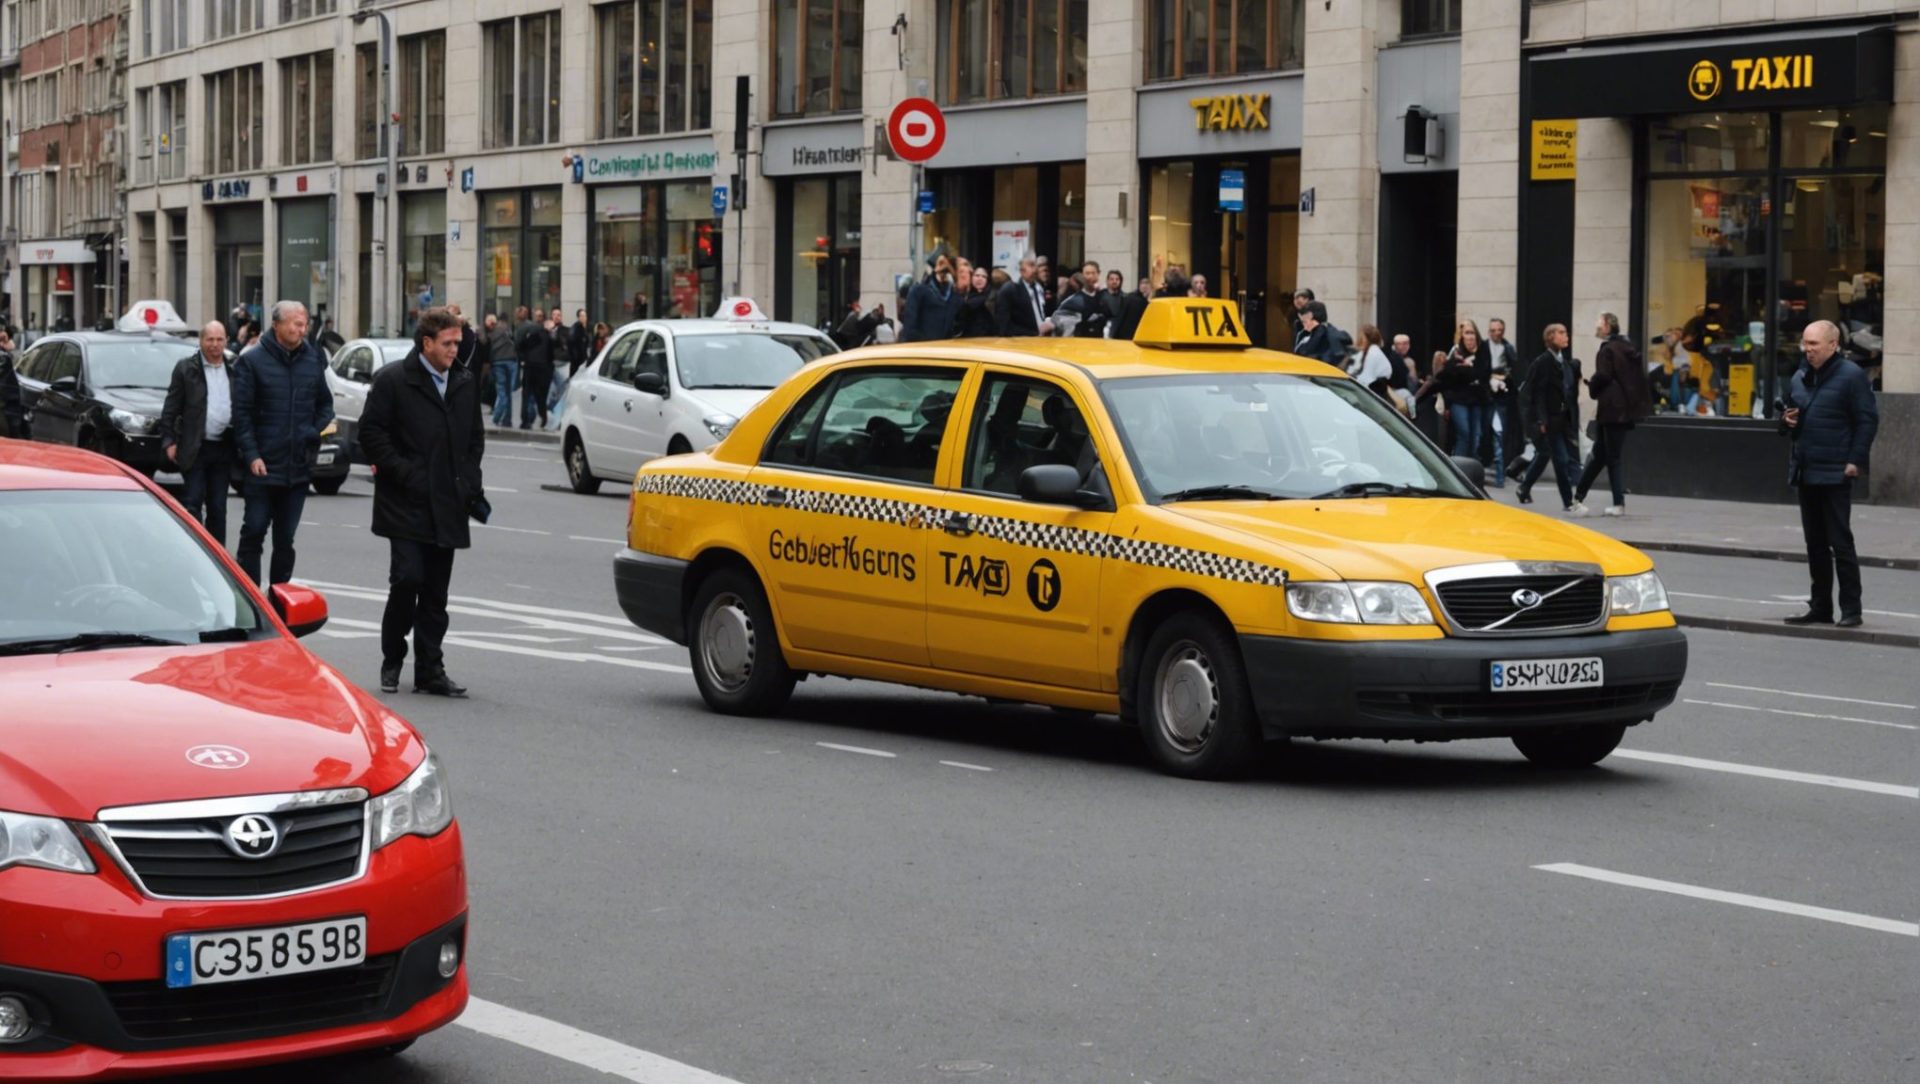 découvrez comment obtenir des informations sur les tarifs des taxis à bruxelles et planifiez vos déplacements en toute sérénité.